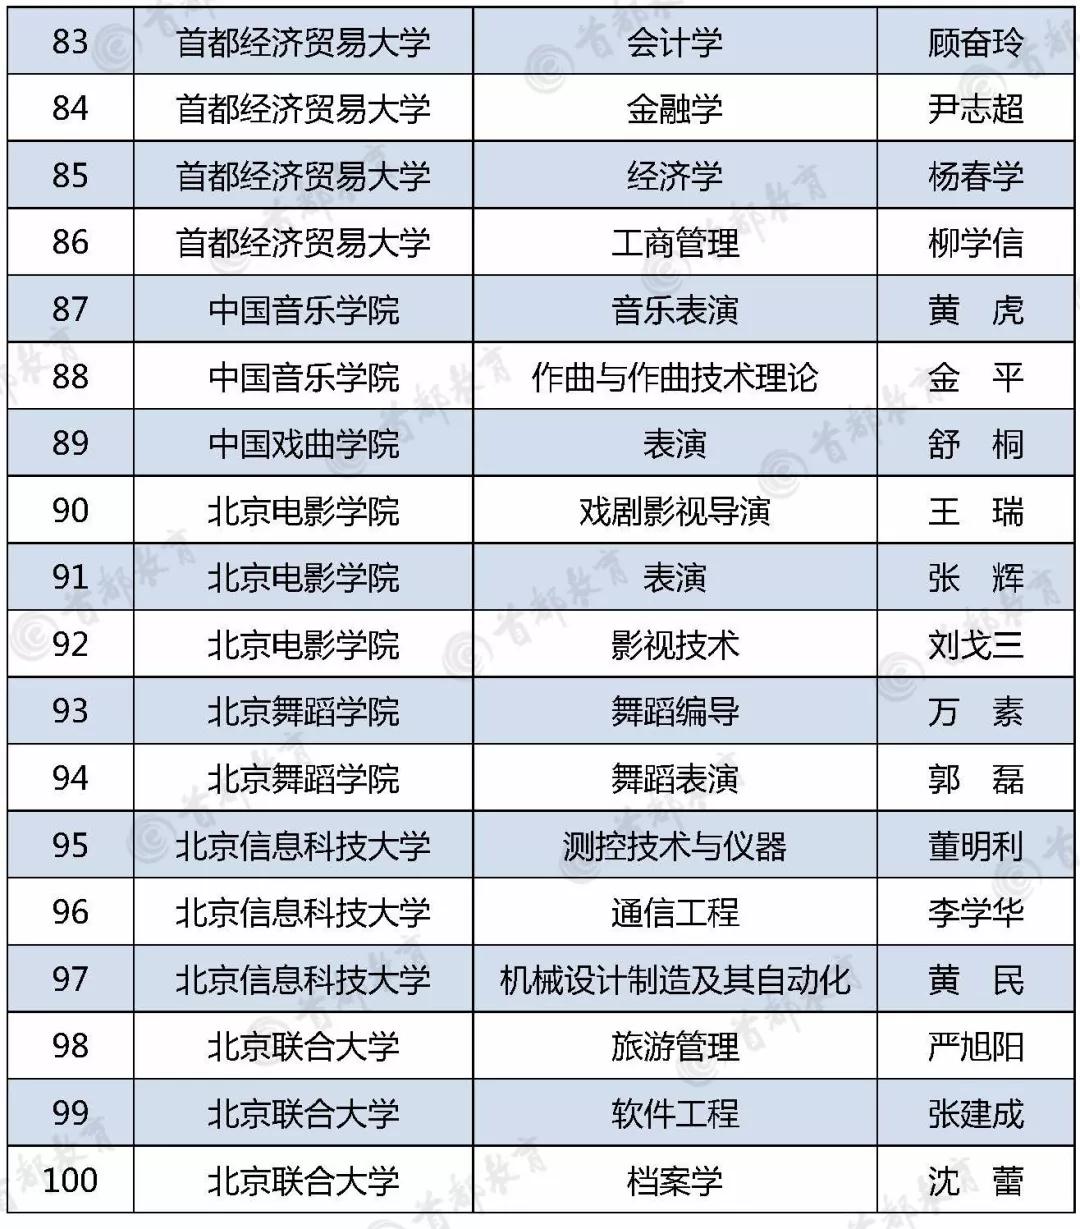 北京高校“重点建设一流专业”名单；高校名单